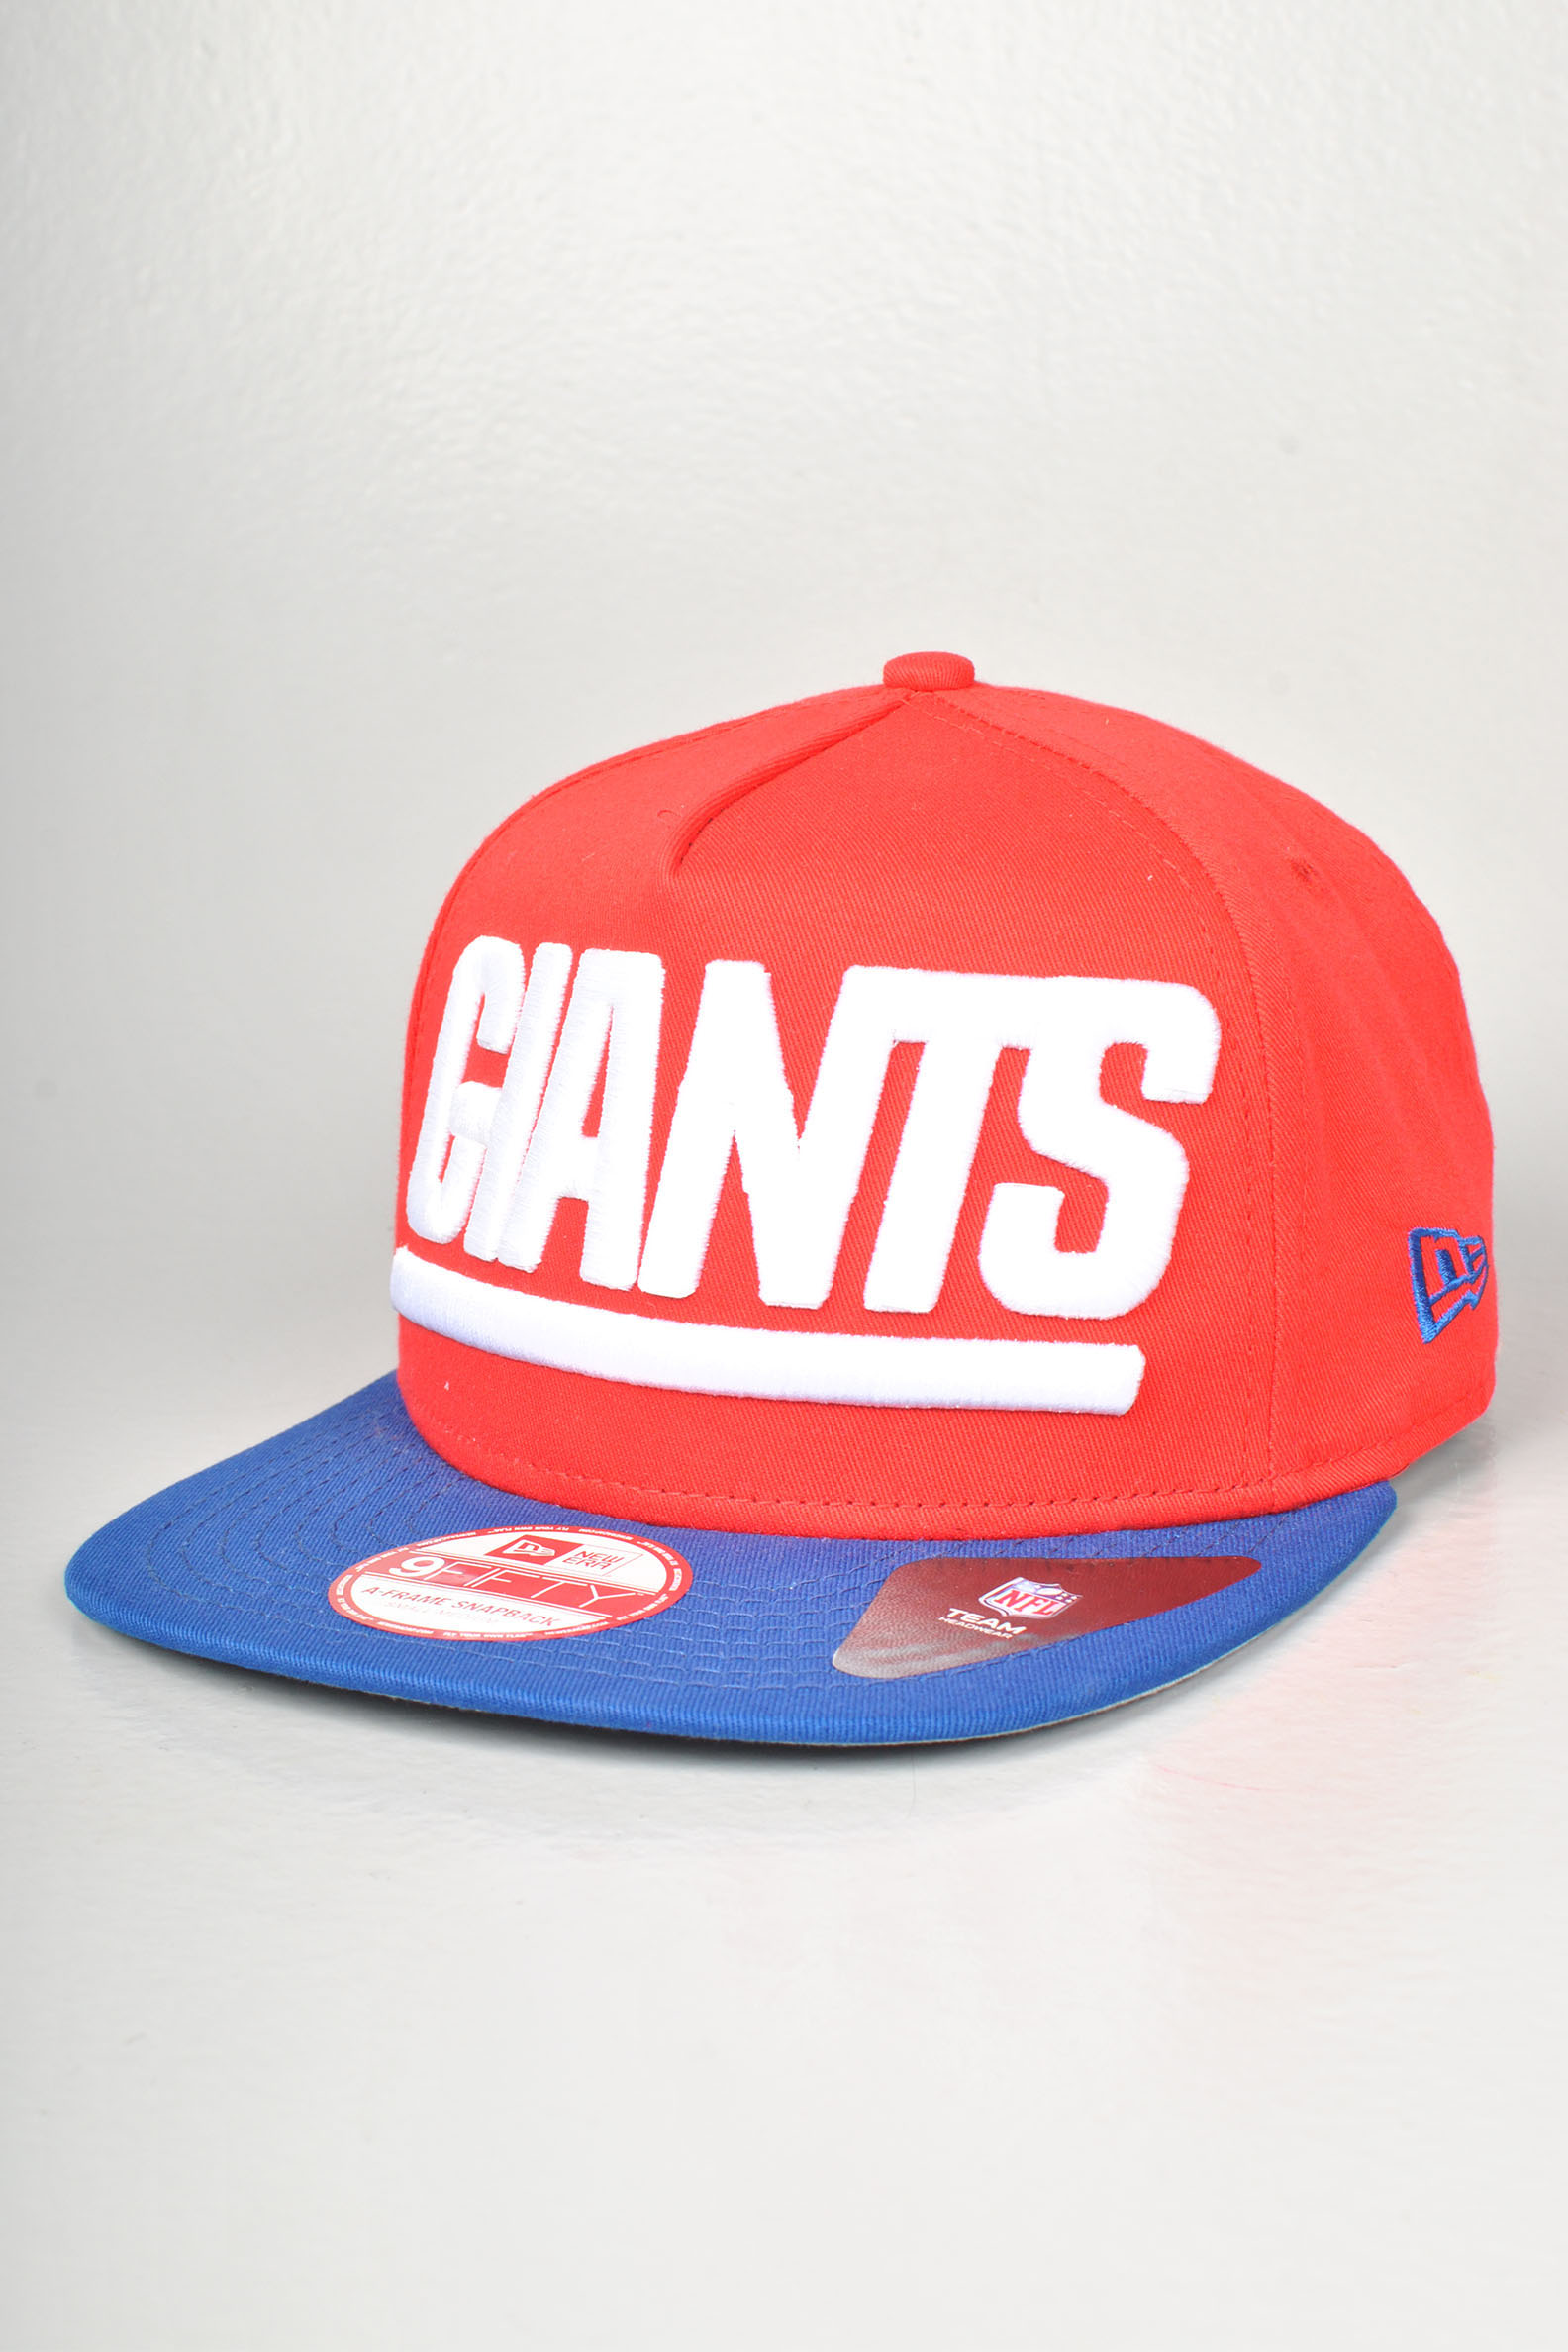 NY Giants Snapback Cap, Red Blue